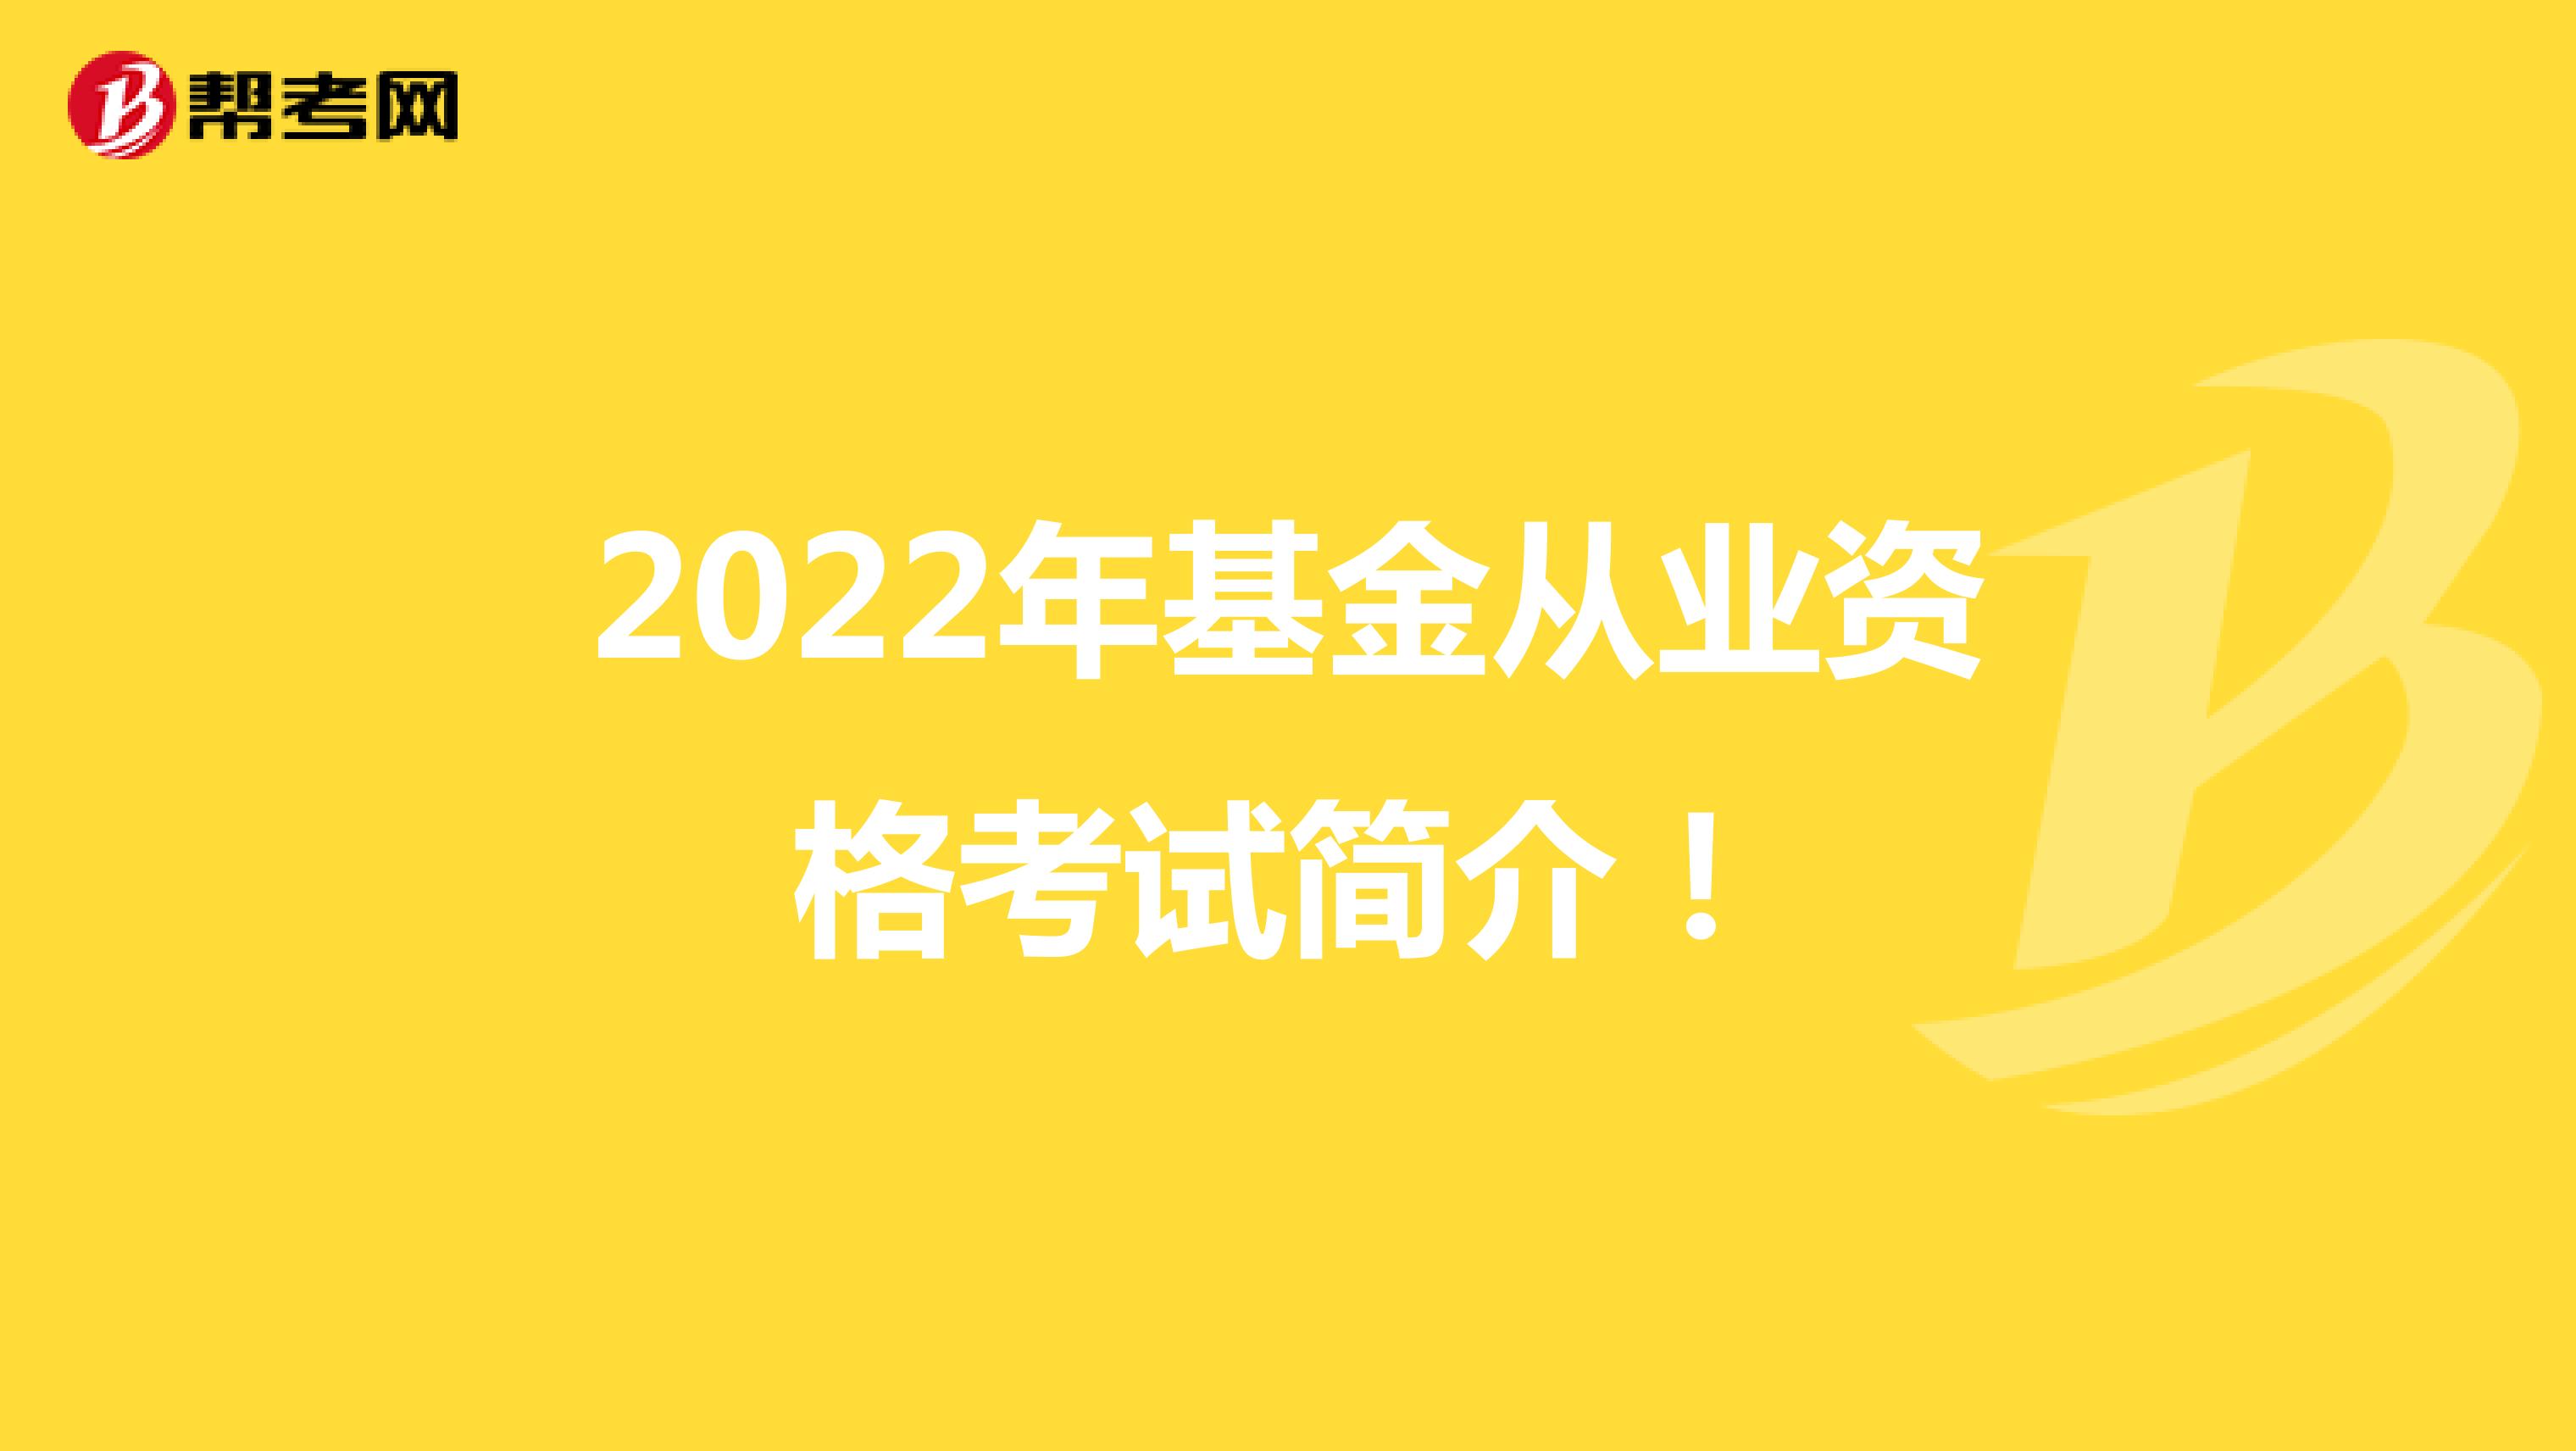 2022年基金从业资格考试简介！